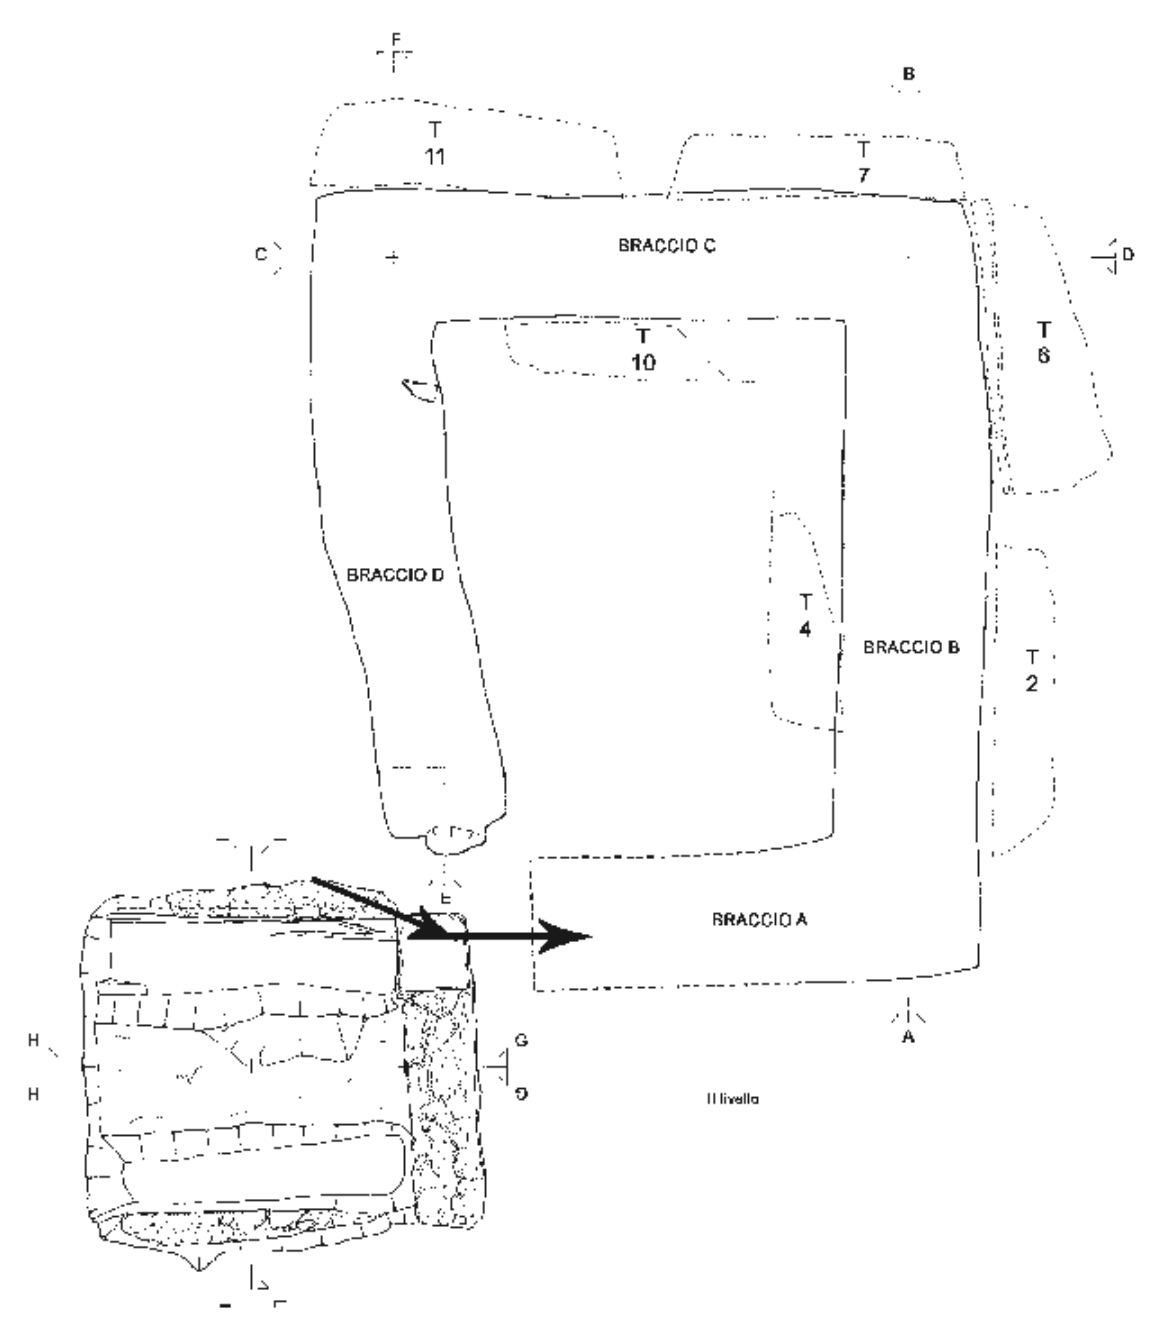 Schema degli ambienti con Affiancamento dell’ipogeo (secondo livello) e della struttura soprastante